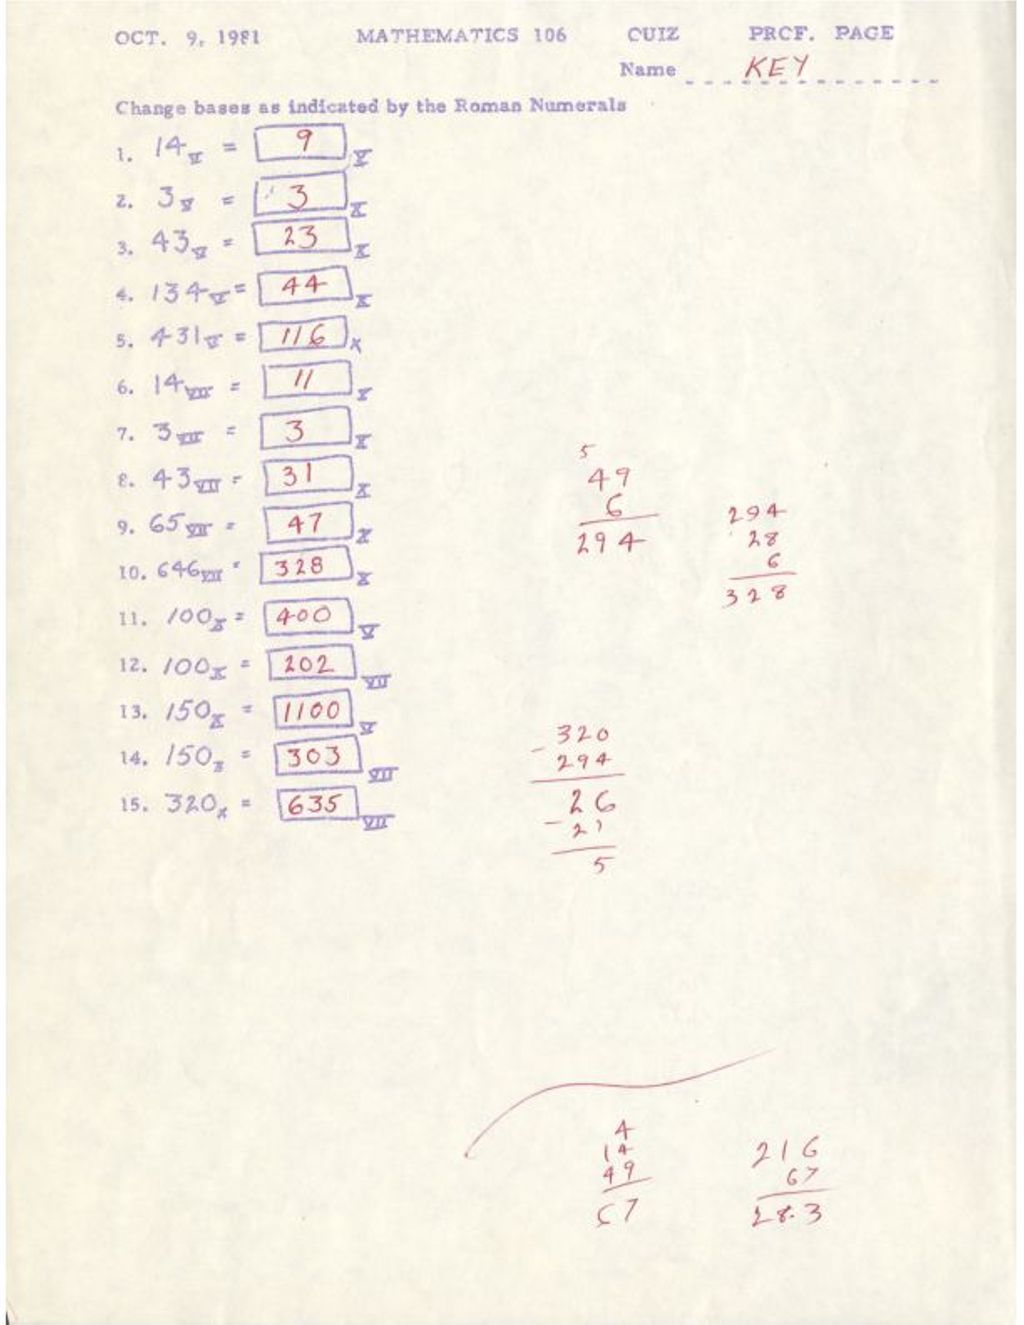 Miniature of Mathematics 106 Quiz Oct. 9, 1981 w/ AK(base)